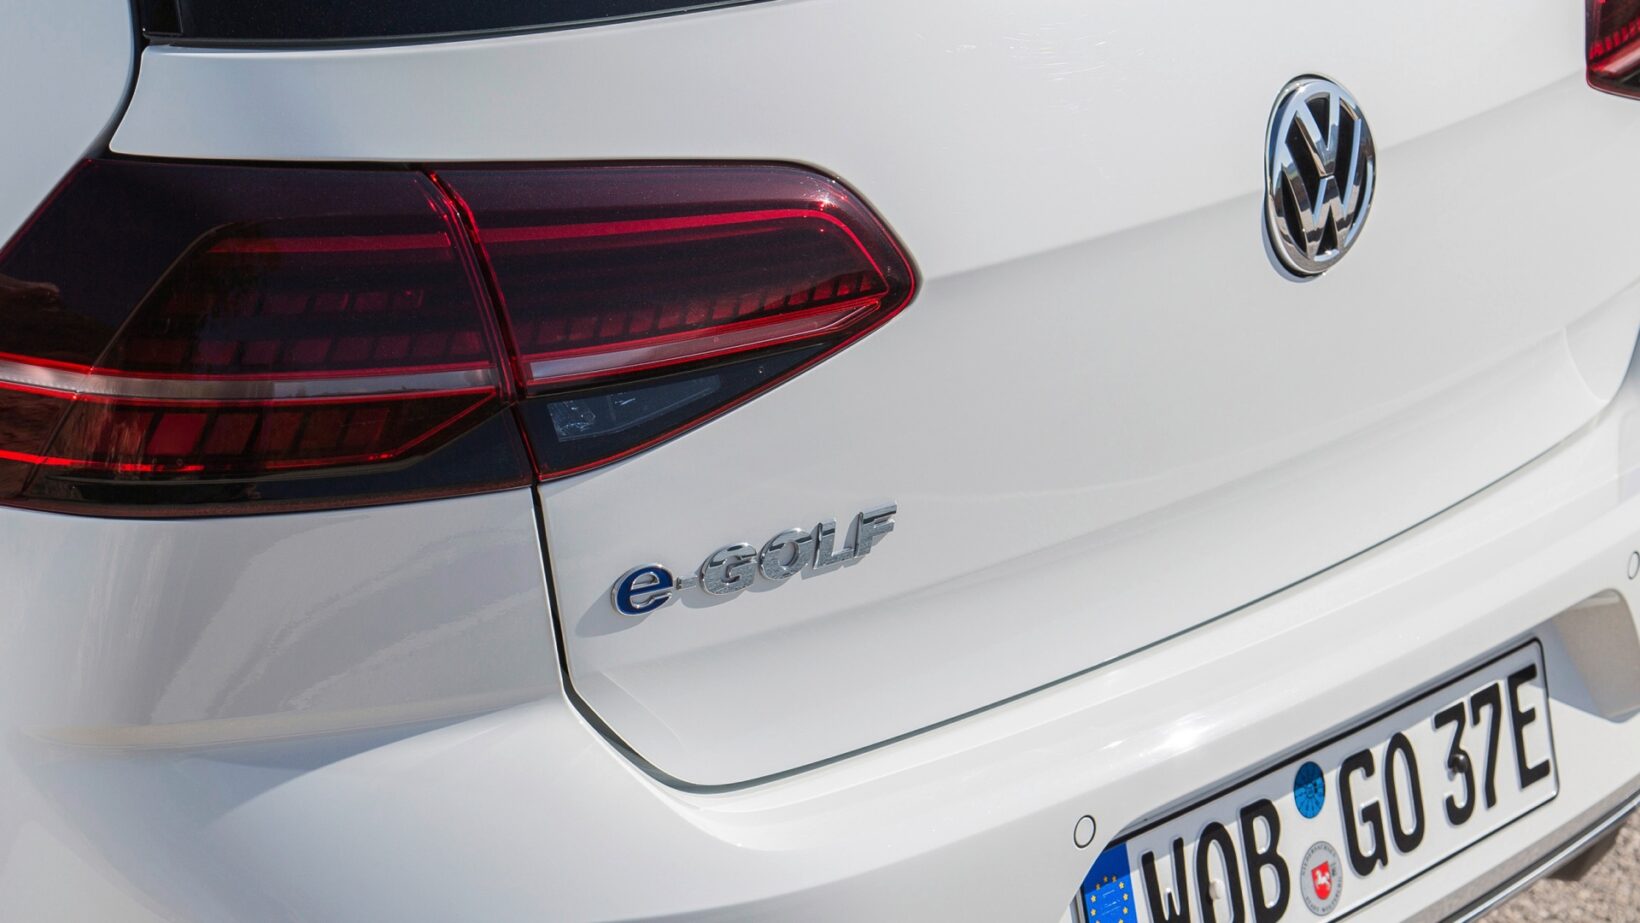 Volkswagen Goif electric